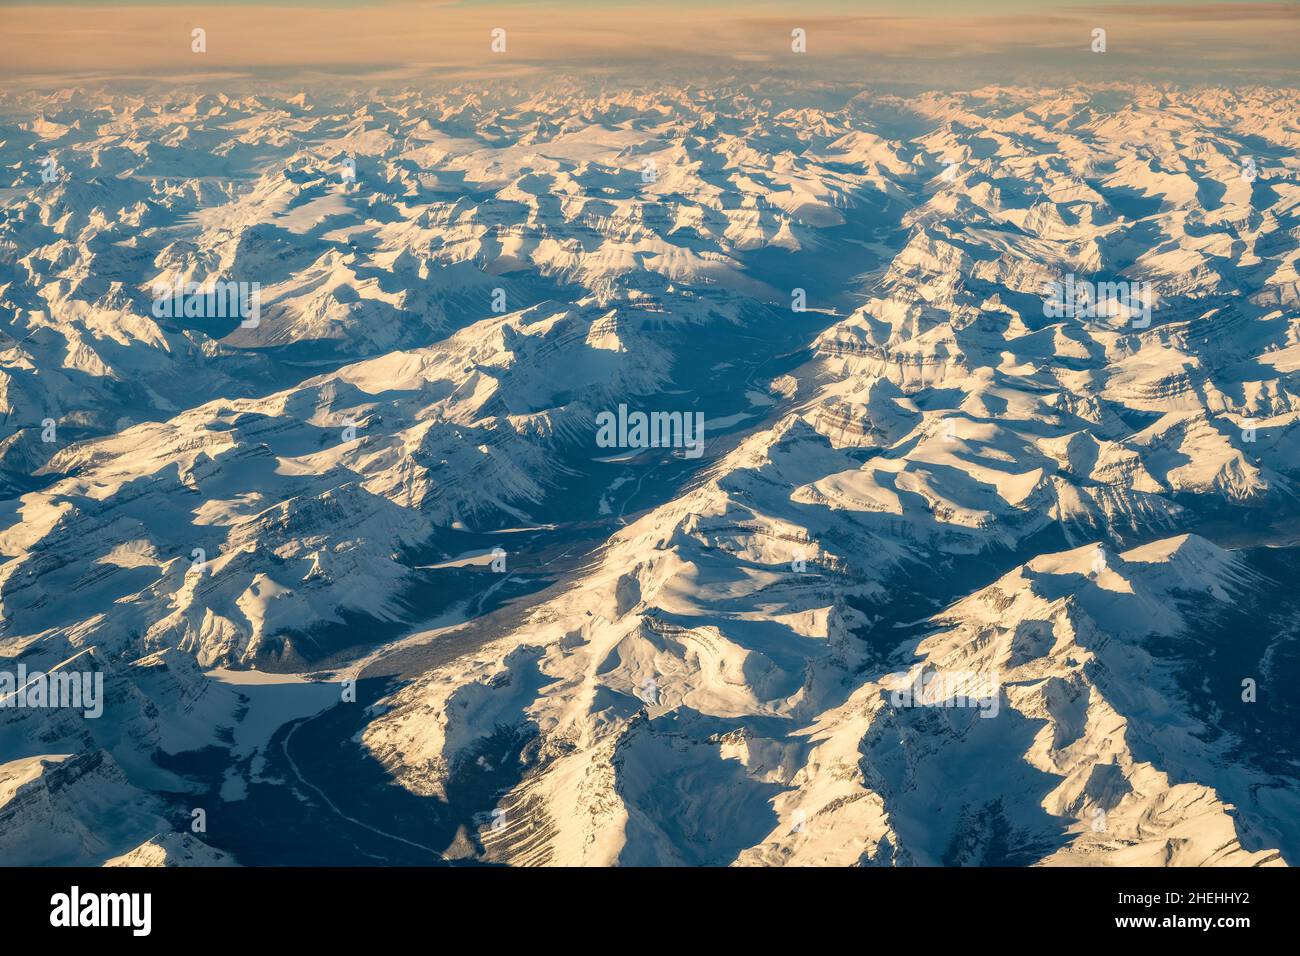 Vue aérienne d'hiver sur les montagnes enneigées des Rocheuses canadiennes, Alberta, Canada Banque D'Images